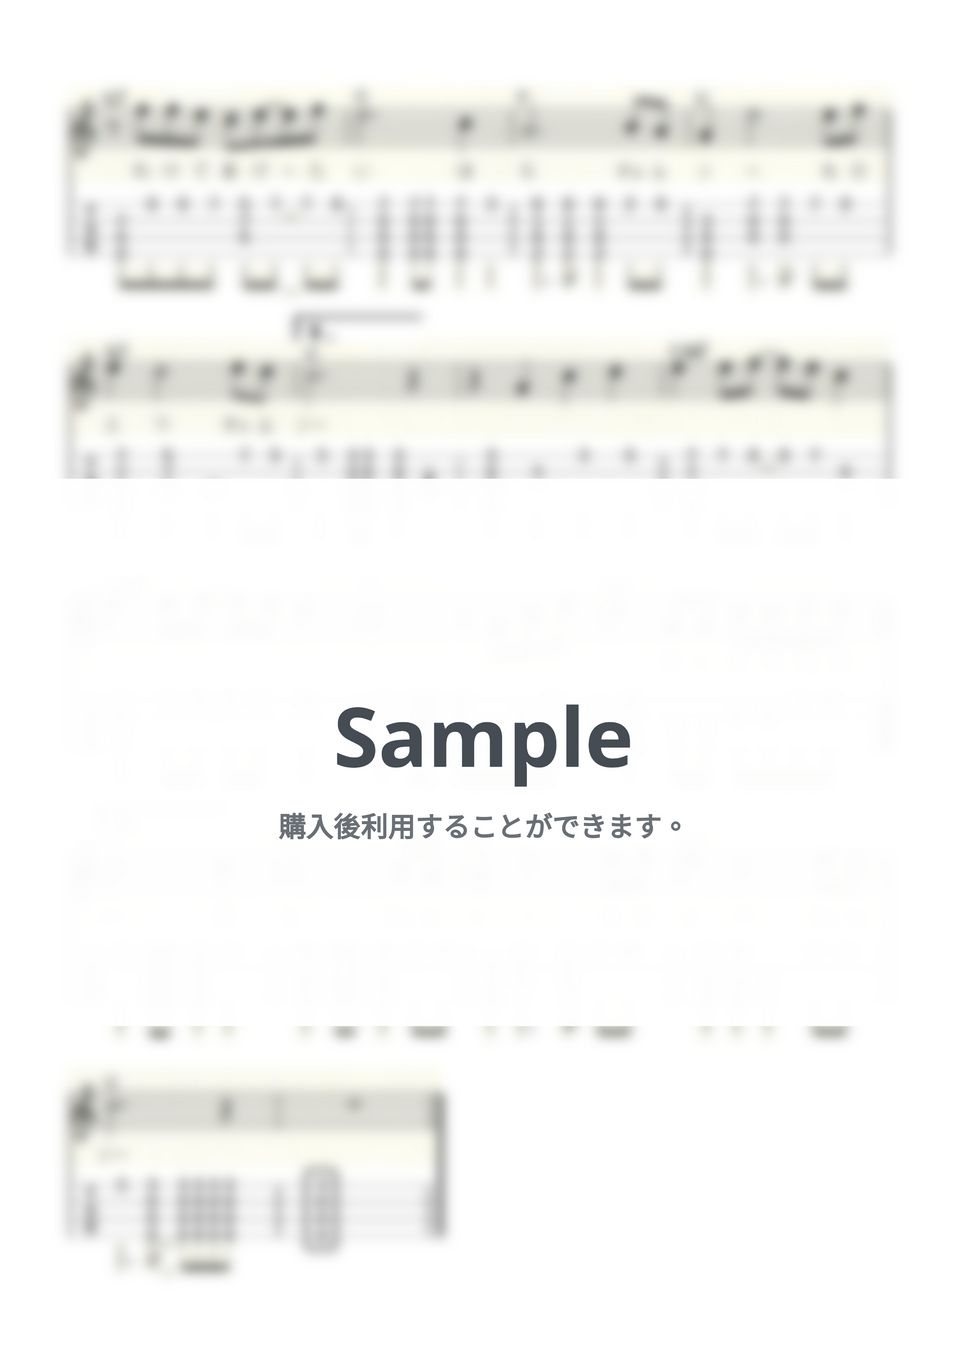 シモンズ - 明治チェルシーの唄 (ｳｸﾚﾚｿﾛ/High-G・Low-G/中級) by ukulelepapa